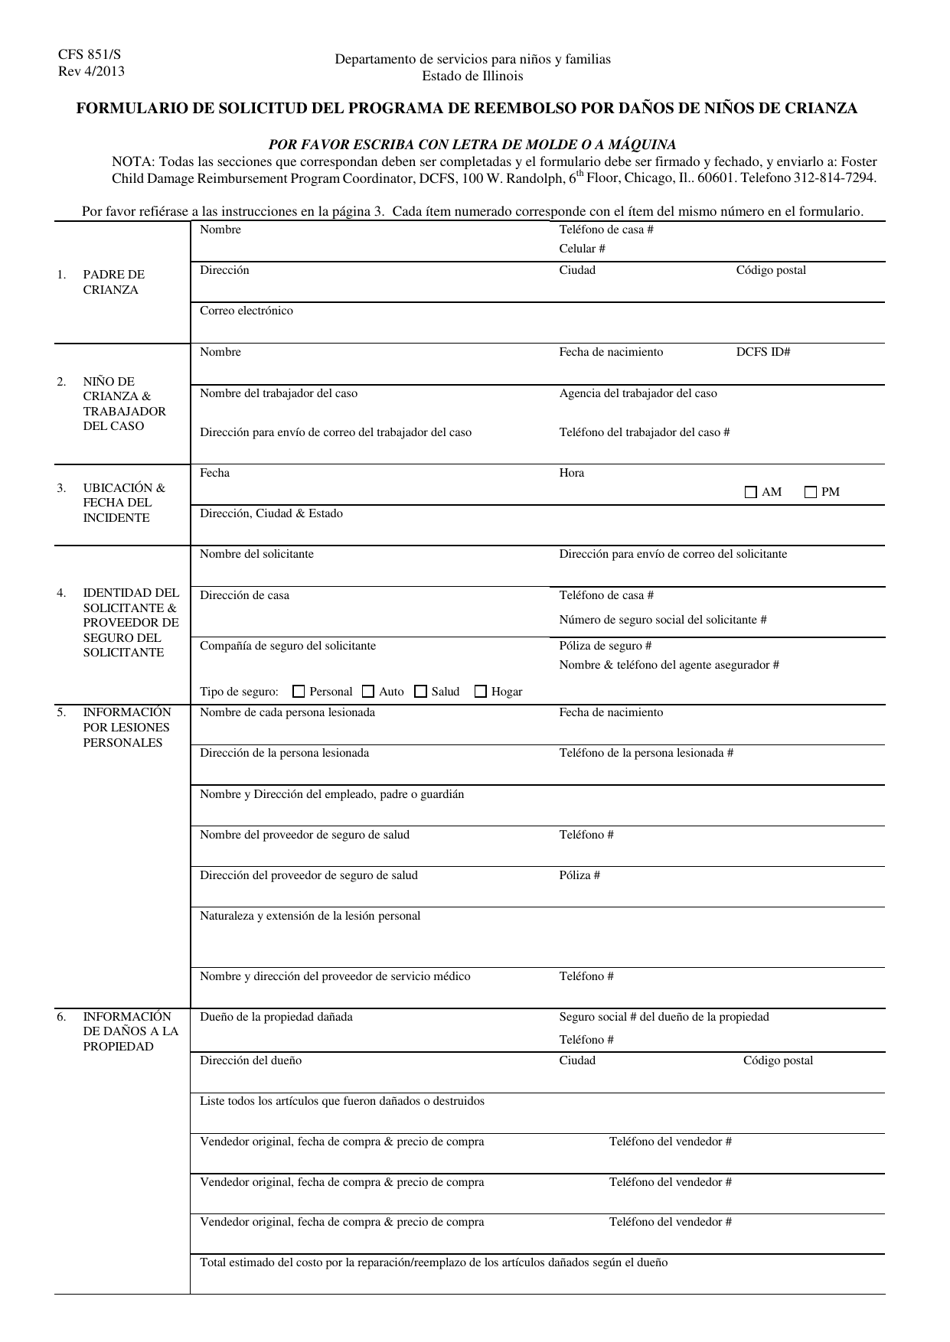 Formulario CFS851/S Formulario De Solicitud Del Programa De Reembolso Por Danos De Ninos De Crianza - Illinois (Spanish), Page 1